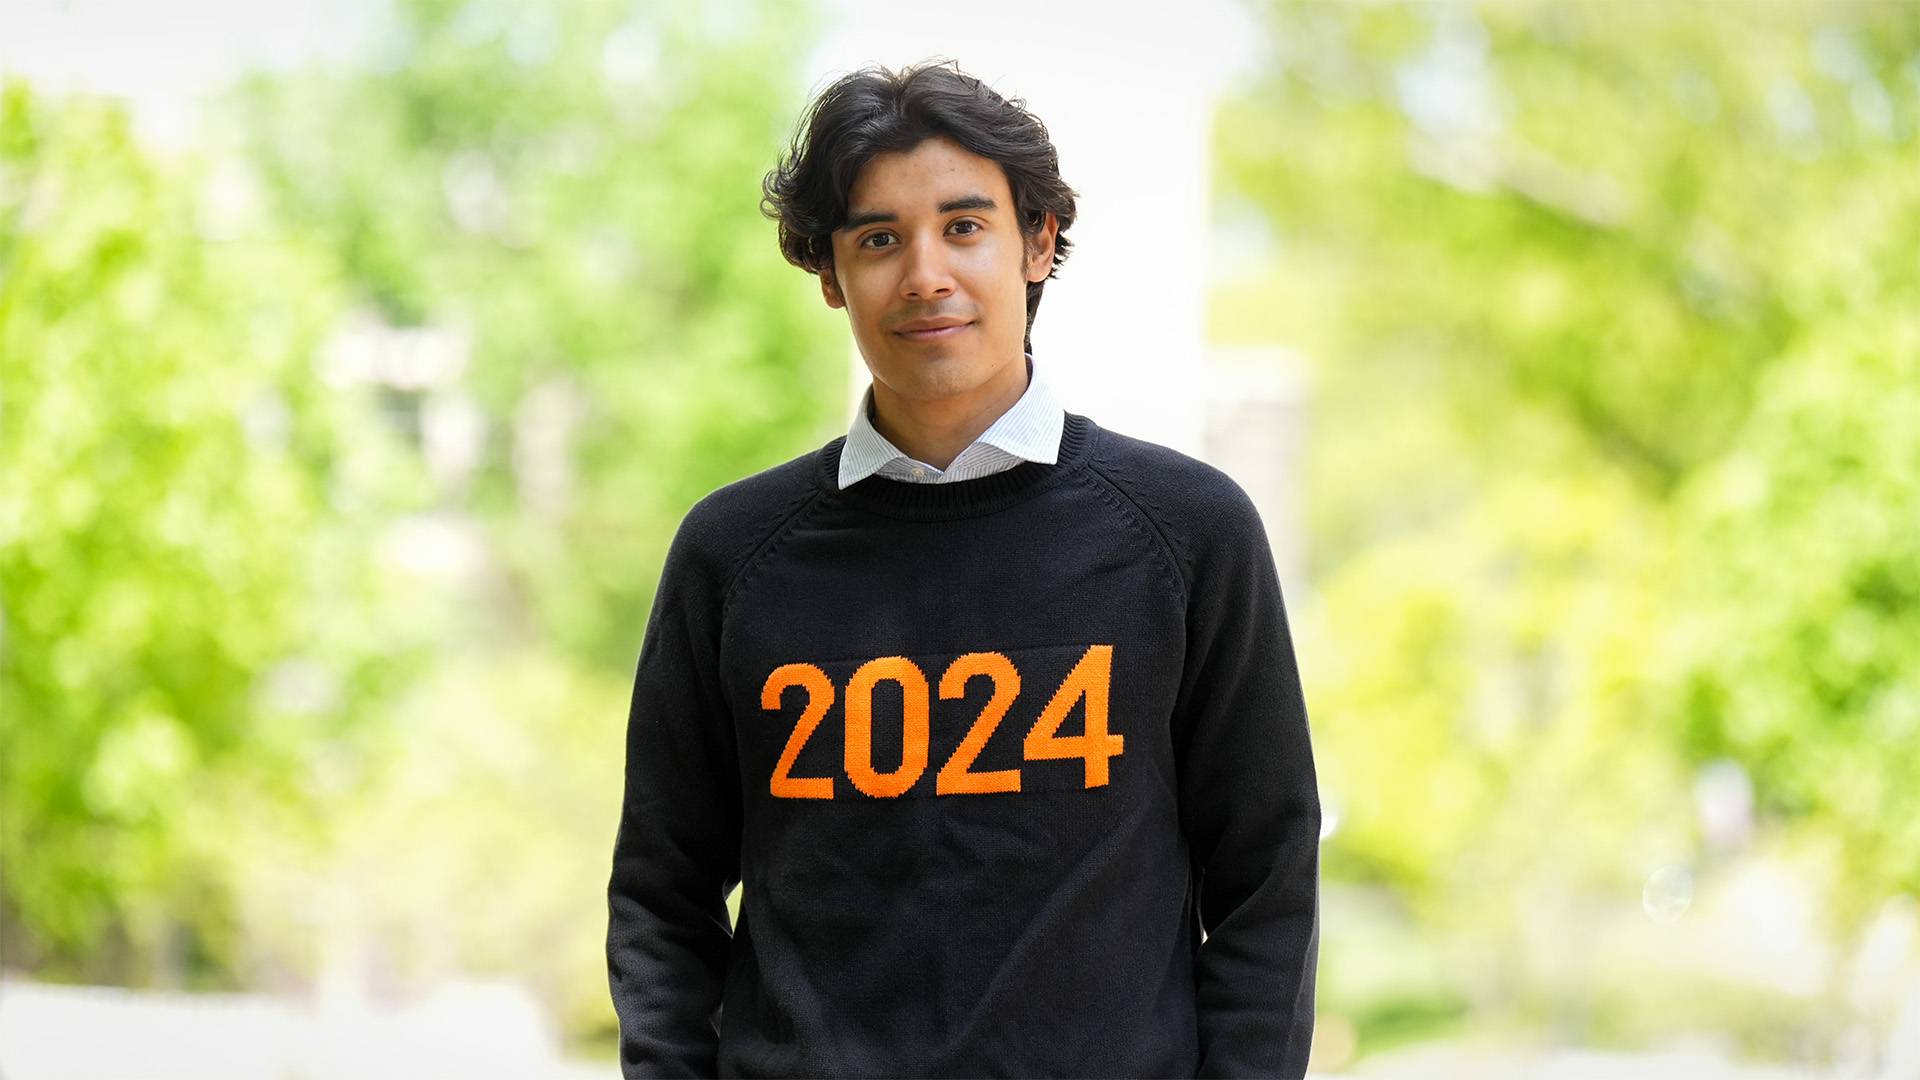 Fernando wearing his 2024 sweater